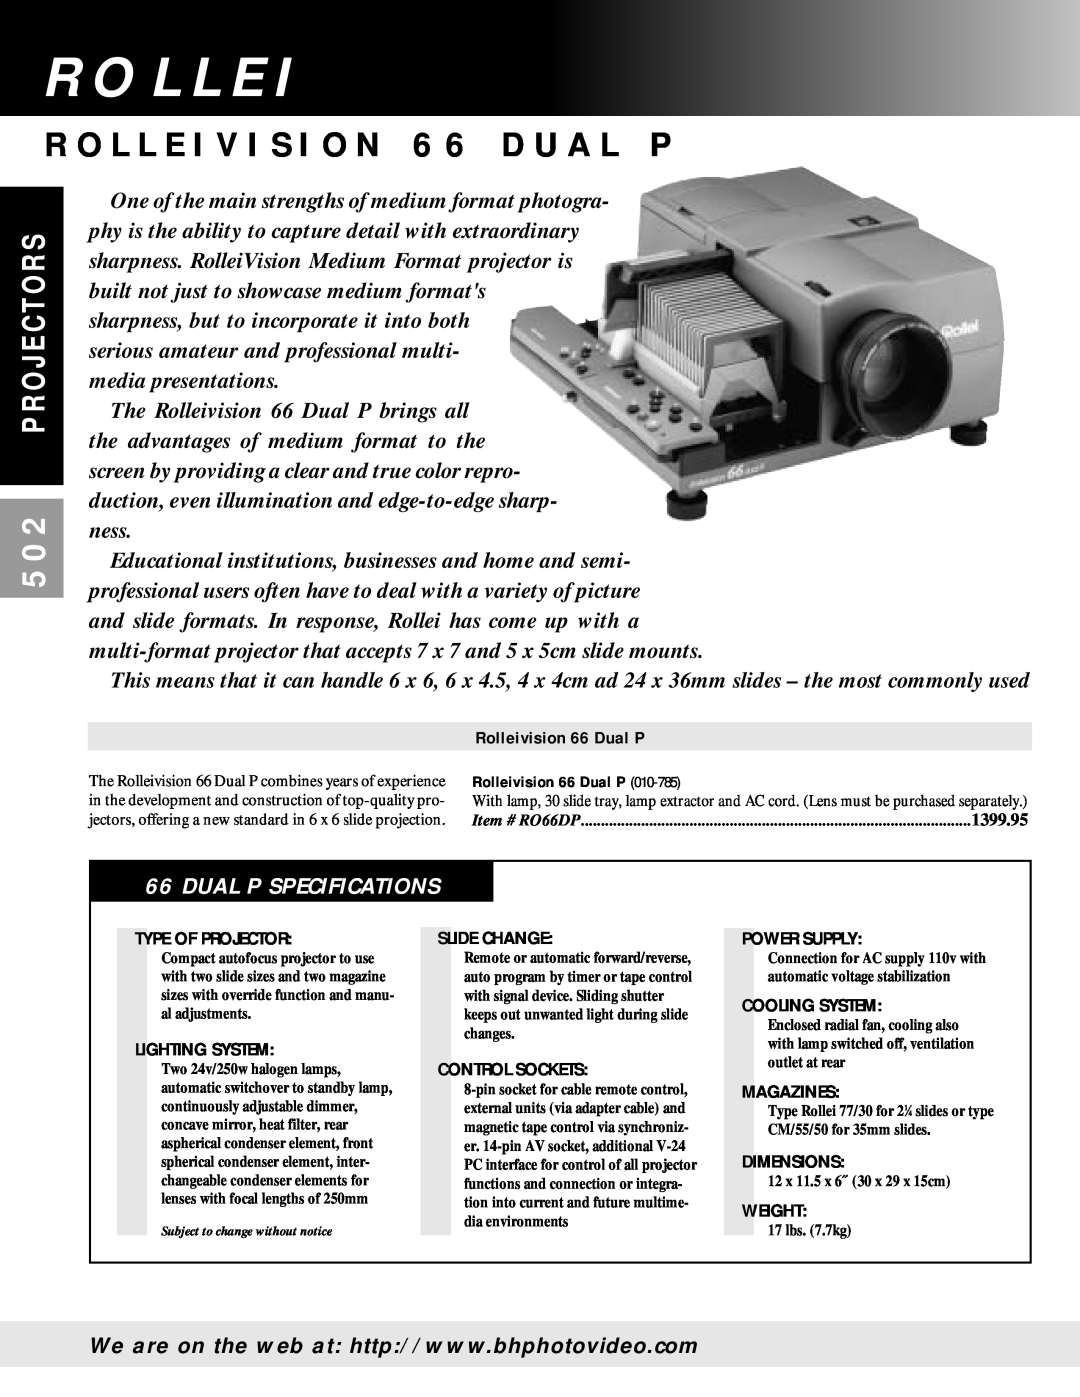 Hasselblad PCP 80 manual R O L L E I V I S I O N 6 6 D U A L P, Dual P Specifications, P R O J E C T O R S 